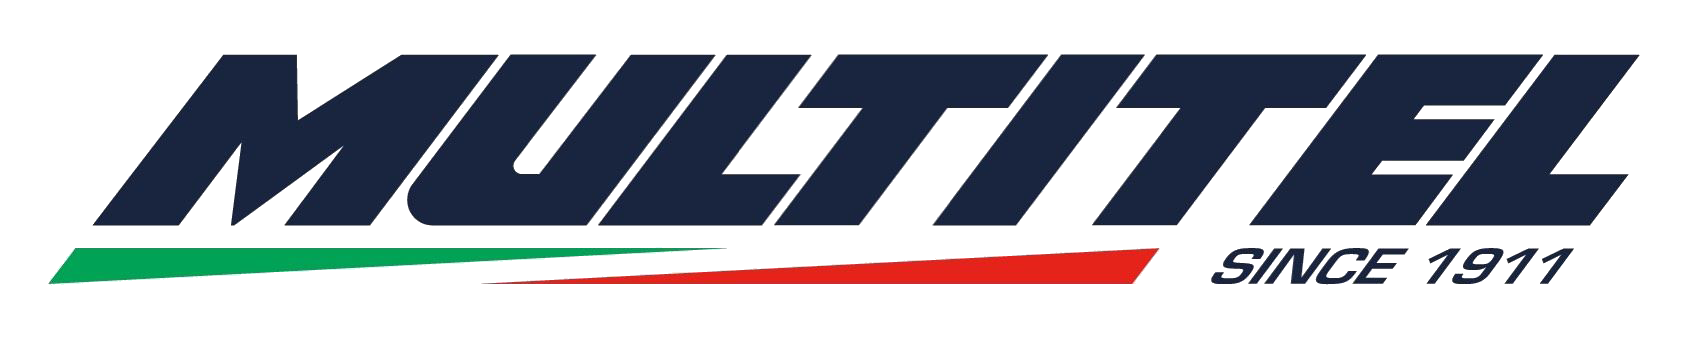 Multitel Pagliero logo original